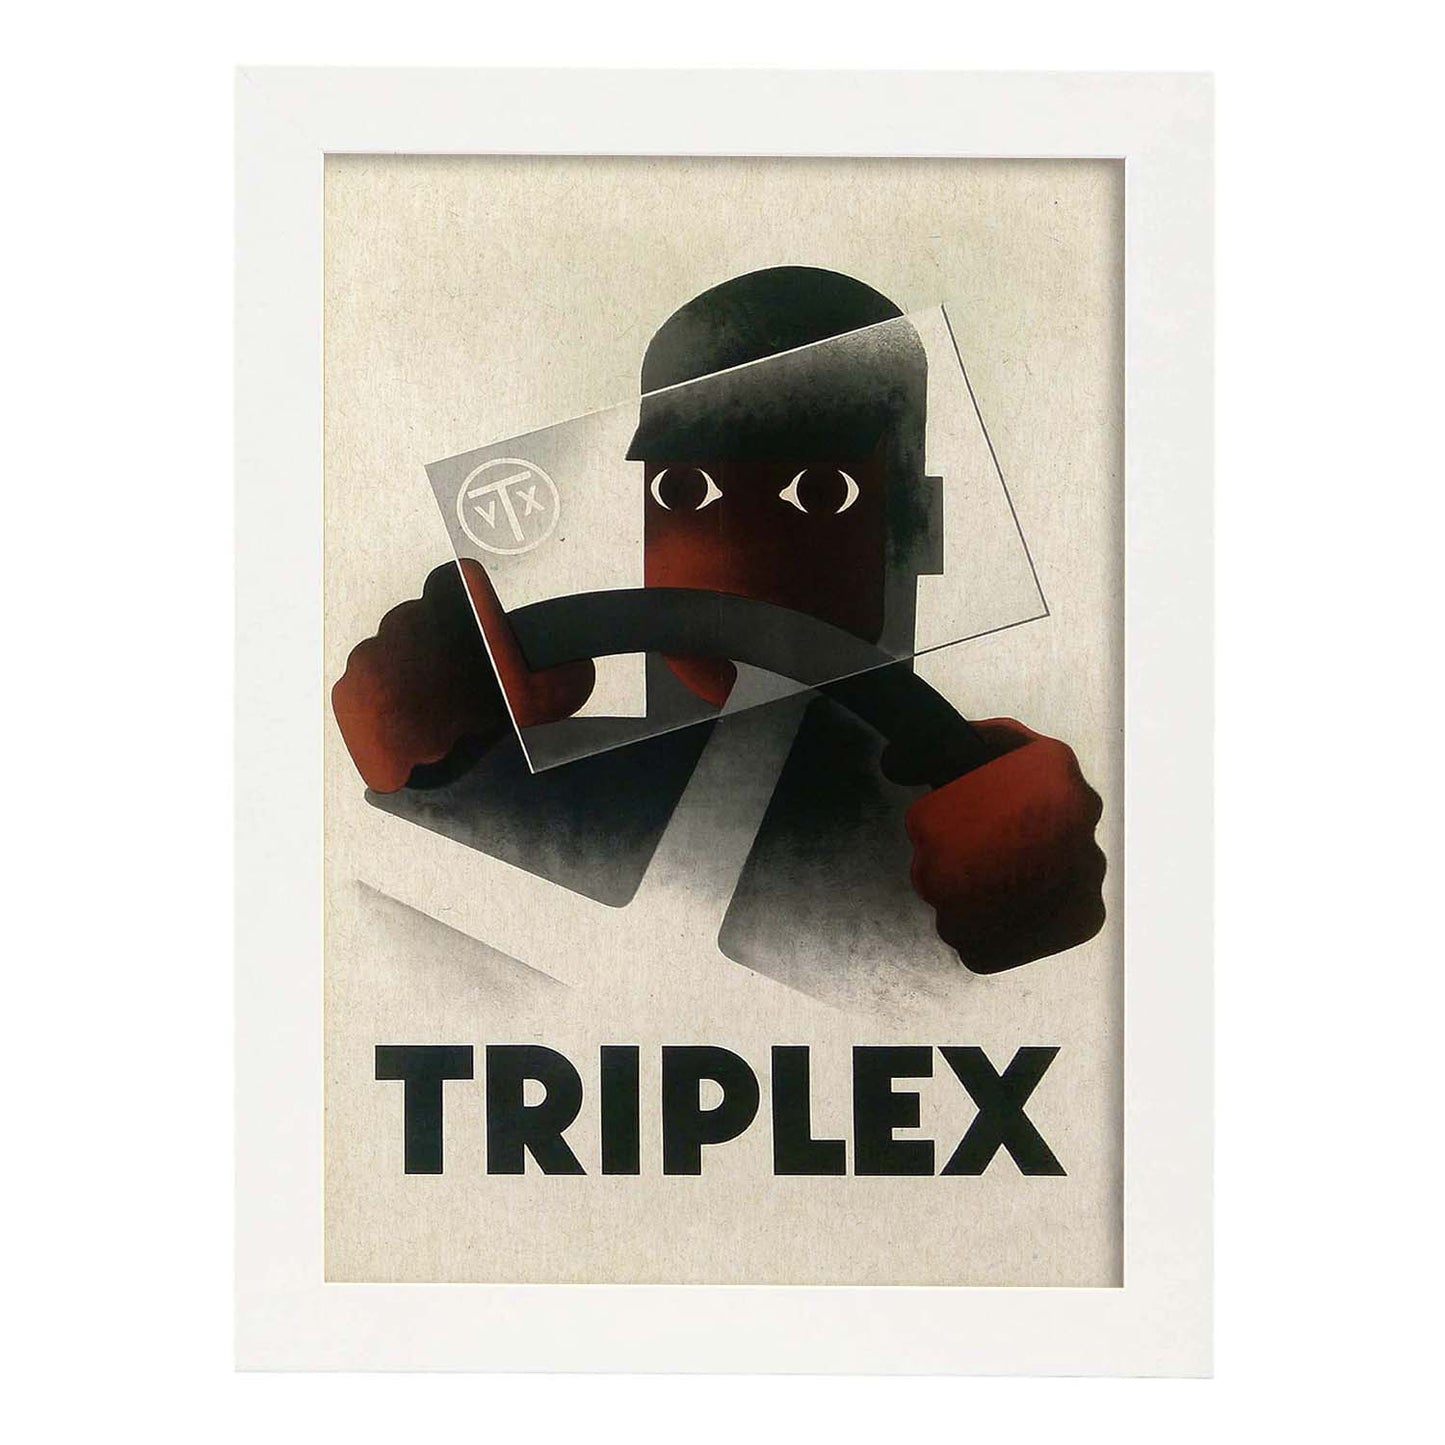 Poster vintage. Cartel vintage Triplex, 1931.-Artwork-Nacnic-A3-Marco Blanco-Nacnic Estudio SL